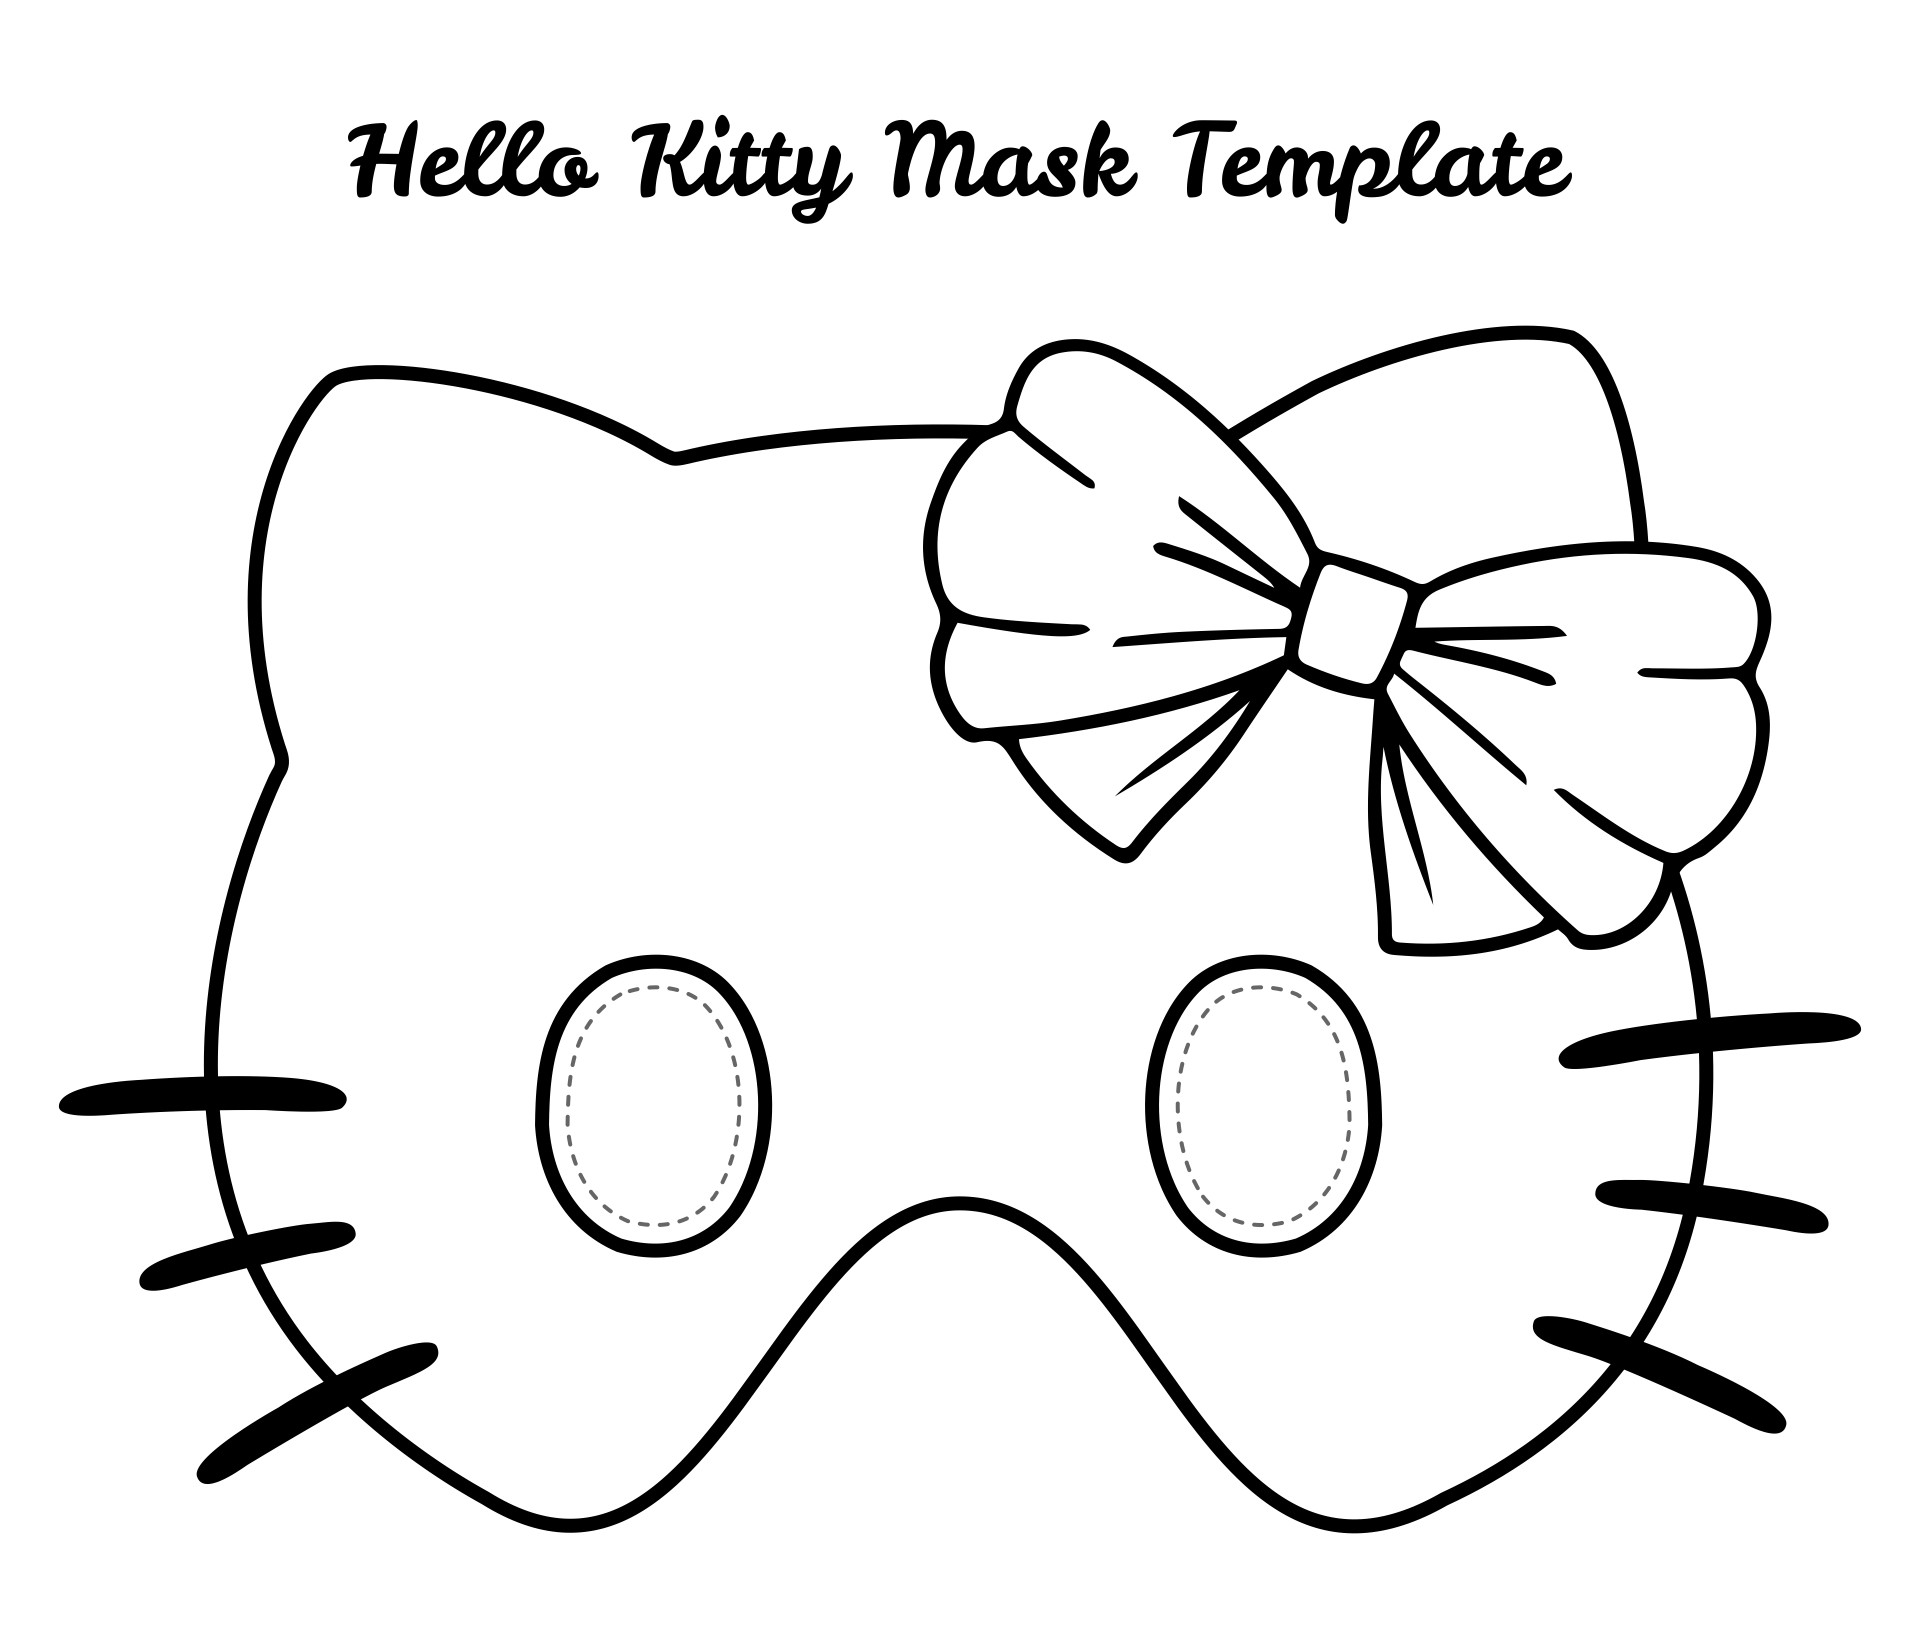 Hello Kitty Mask Template Printable